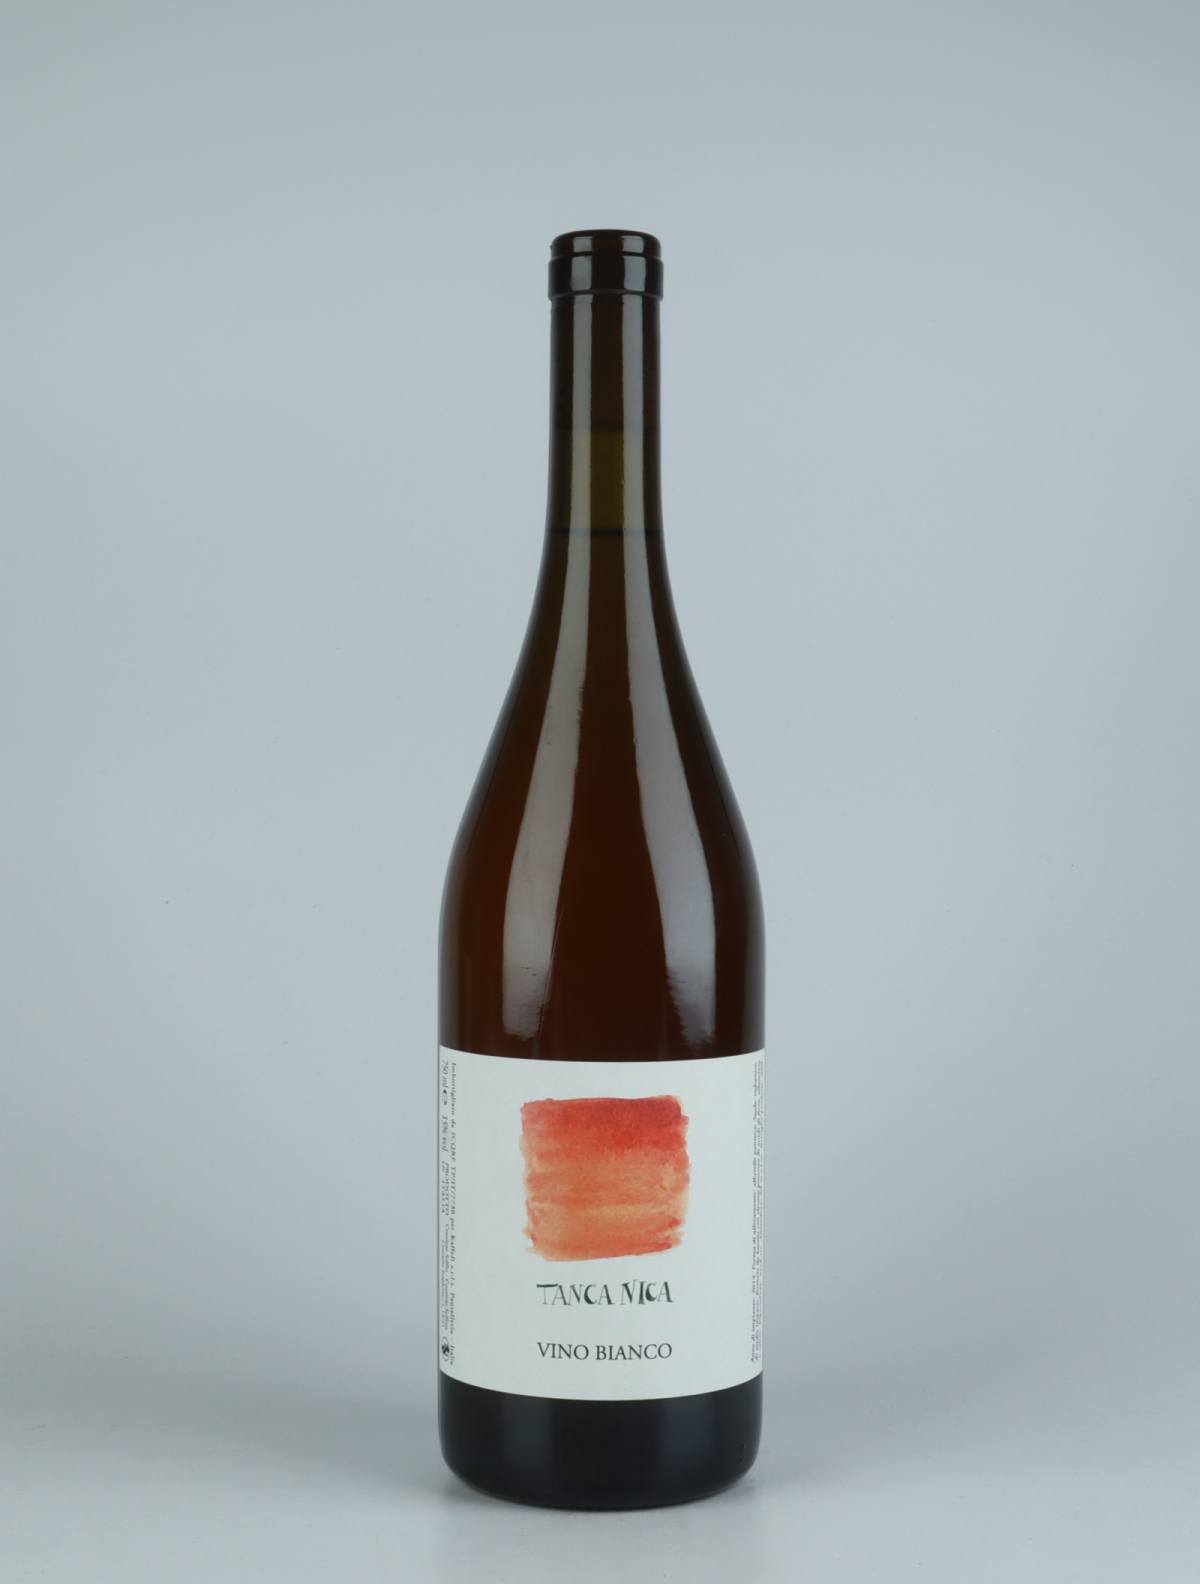 En flaske 2020 Tanca Nica 3 (Orange label) Hvidvin fra Tanca Nica, Sicilien i Italien